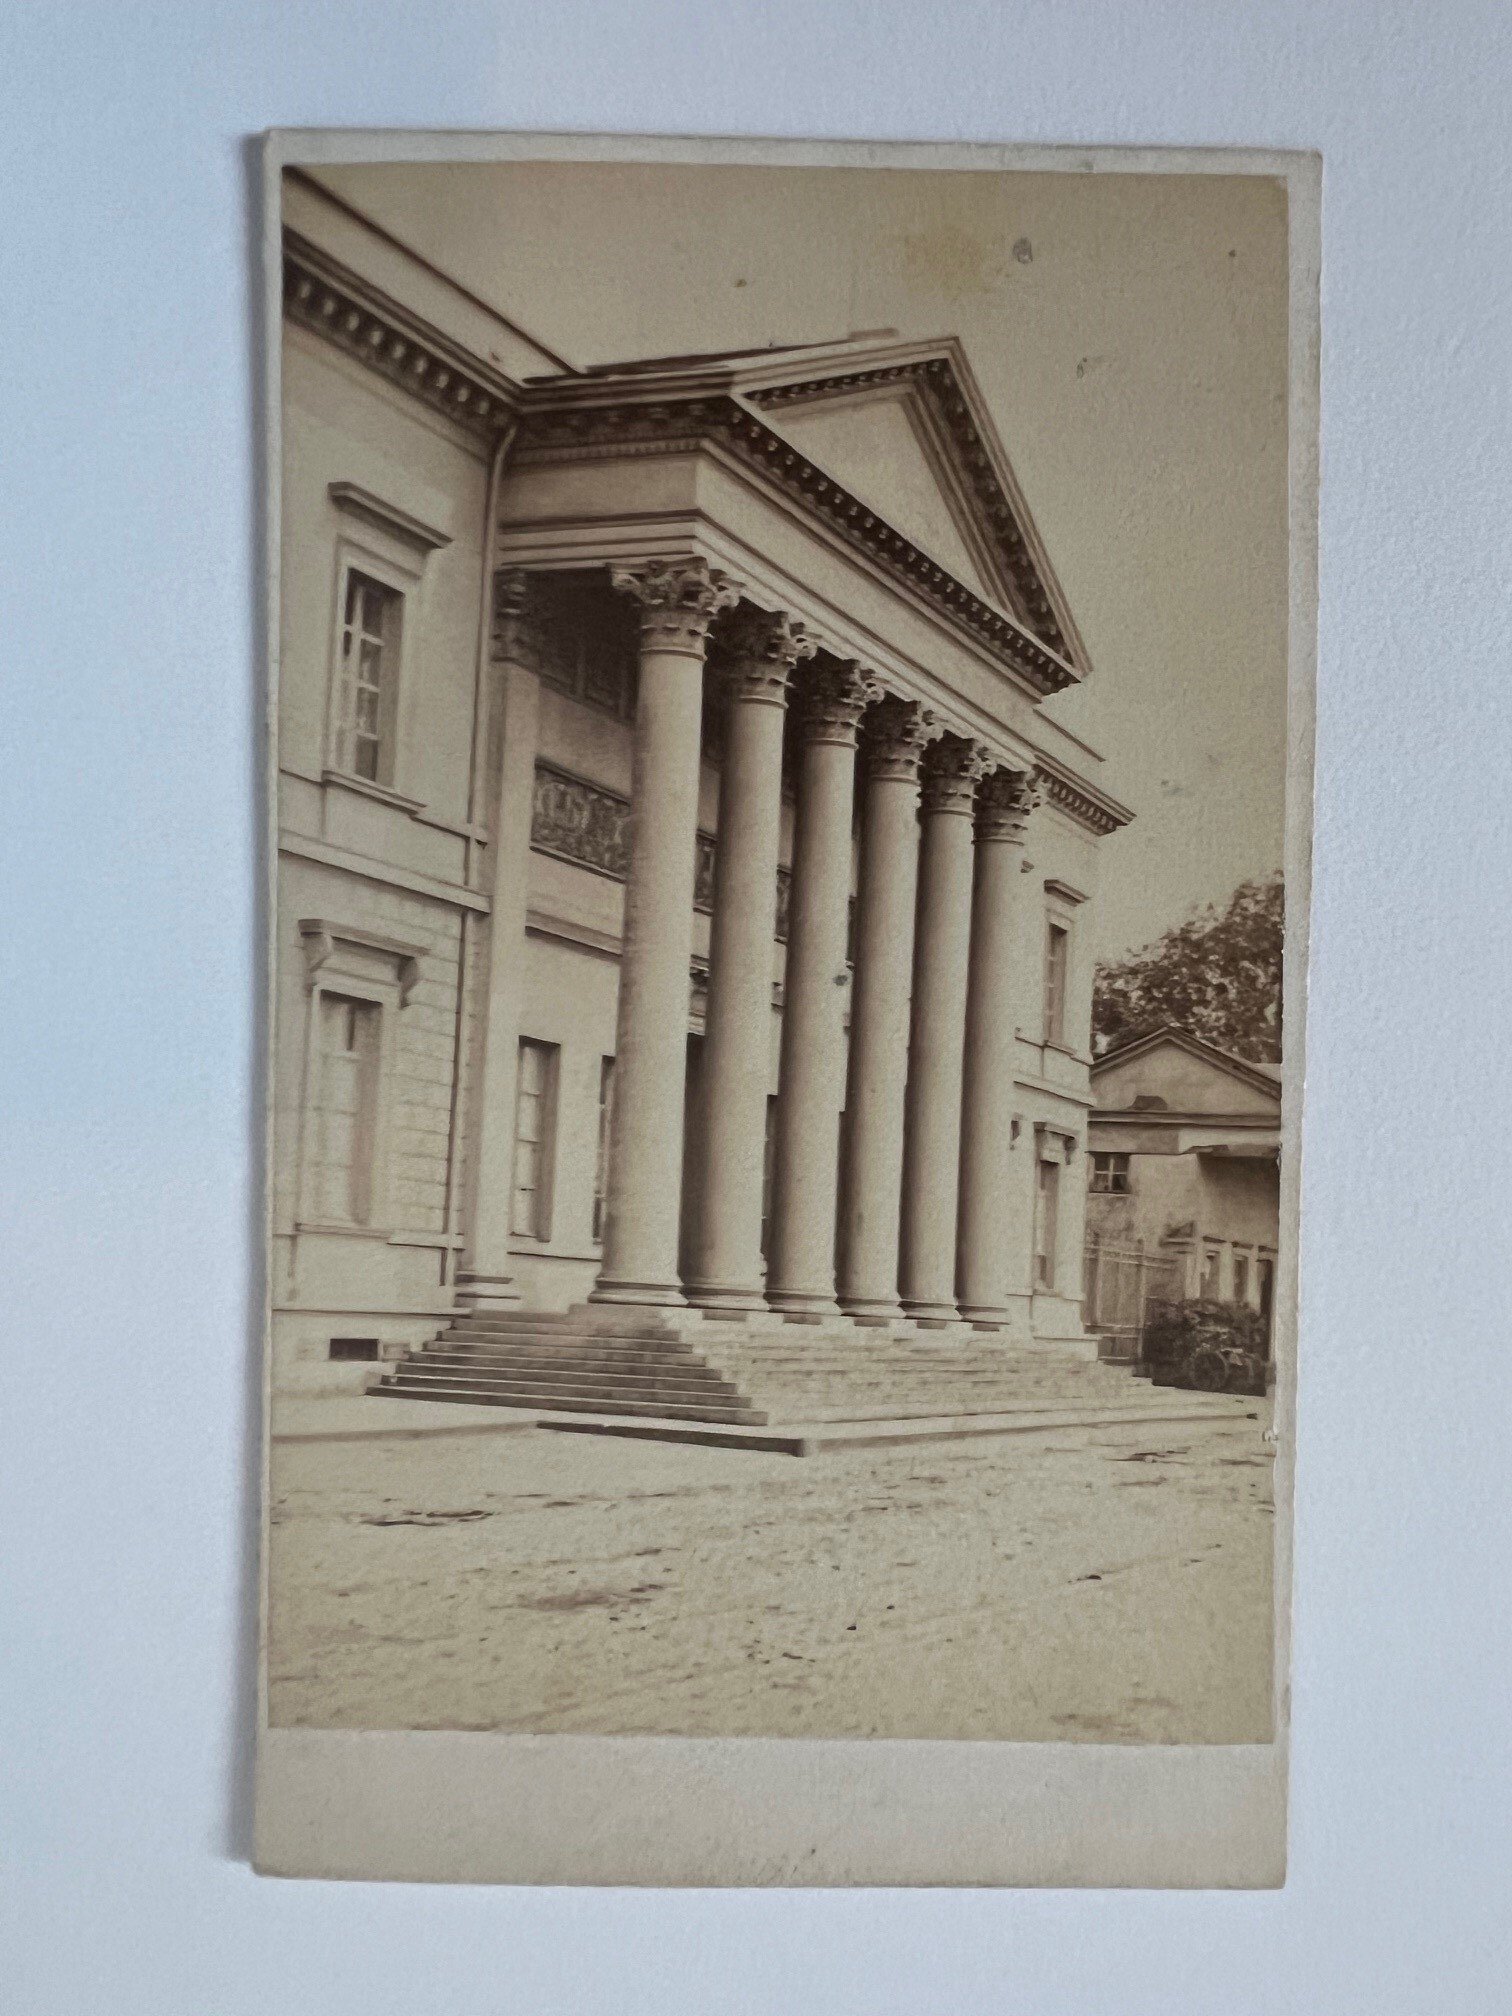 CdV, Unbekannter Fotograf, Frankfurt, Alte Stadtbibliothek, ca. 1865 (Taunus-Rhein-Main - Regionalgeschichtliche Sammlung Dr. Stefan Naas CC BY-NC-SA)